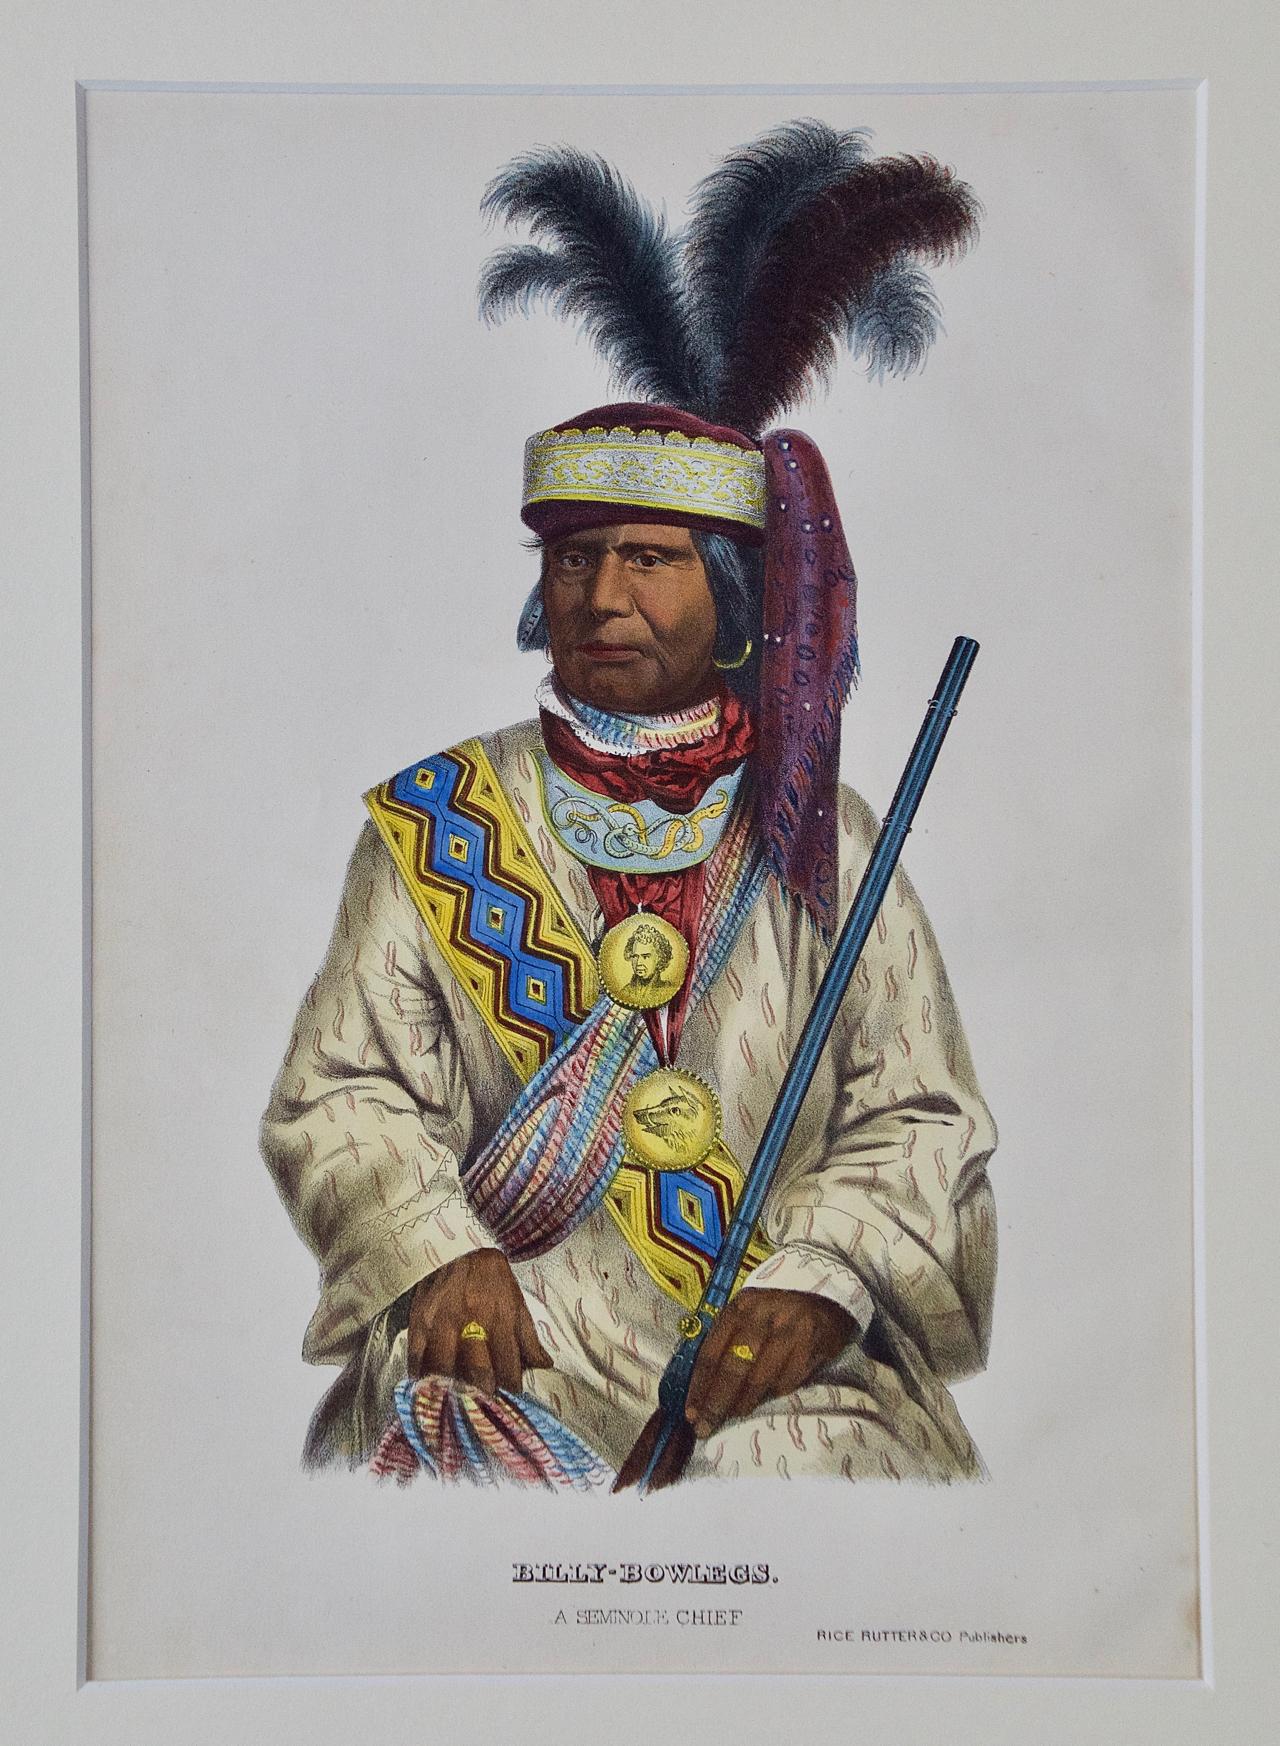 Billy Bowlegs, Chief Seminole Chief: Original McKenney & Hall, handkolorierte Lithographie 